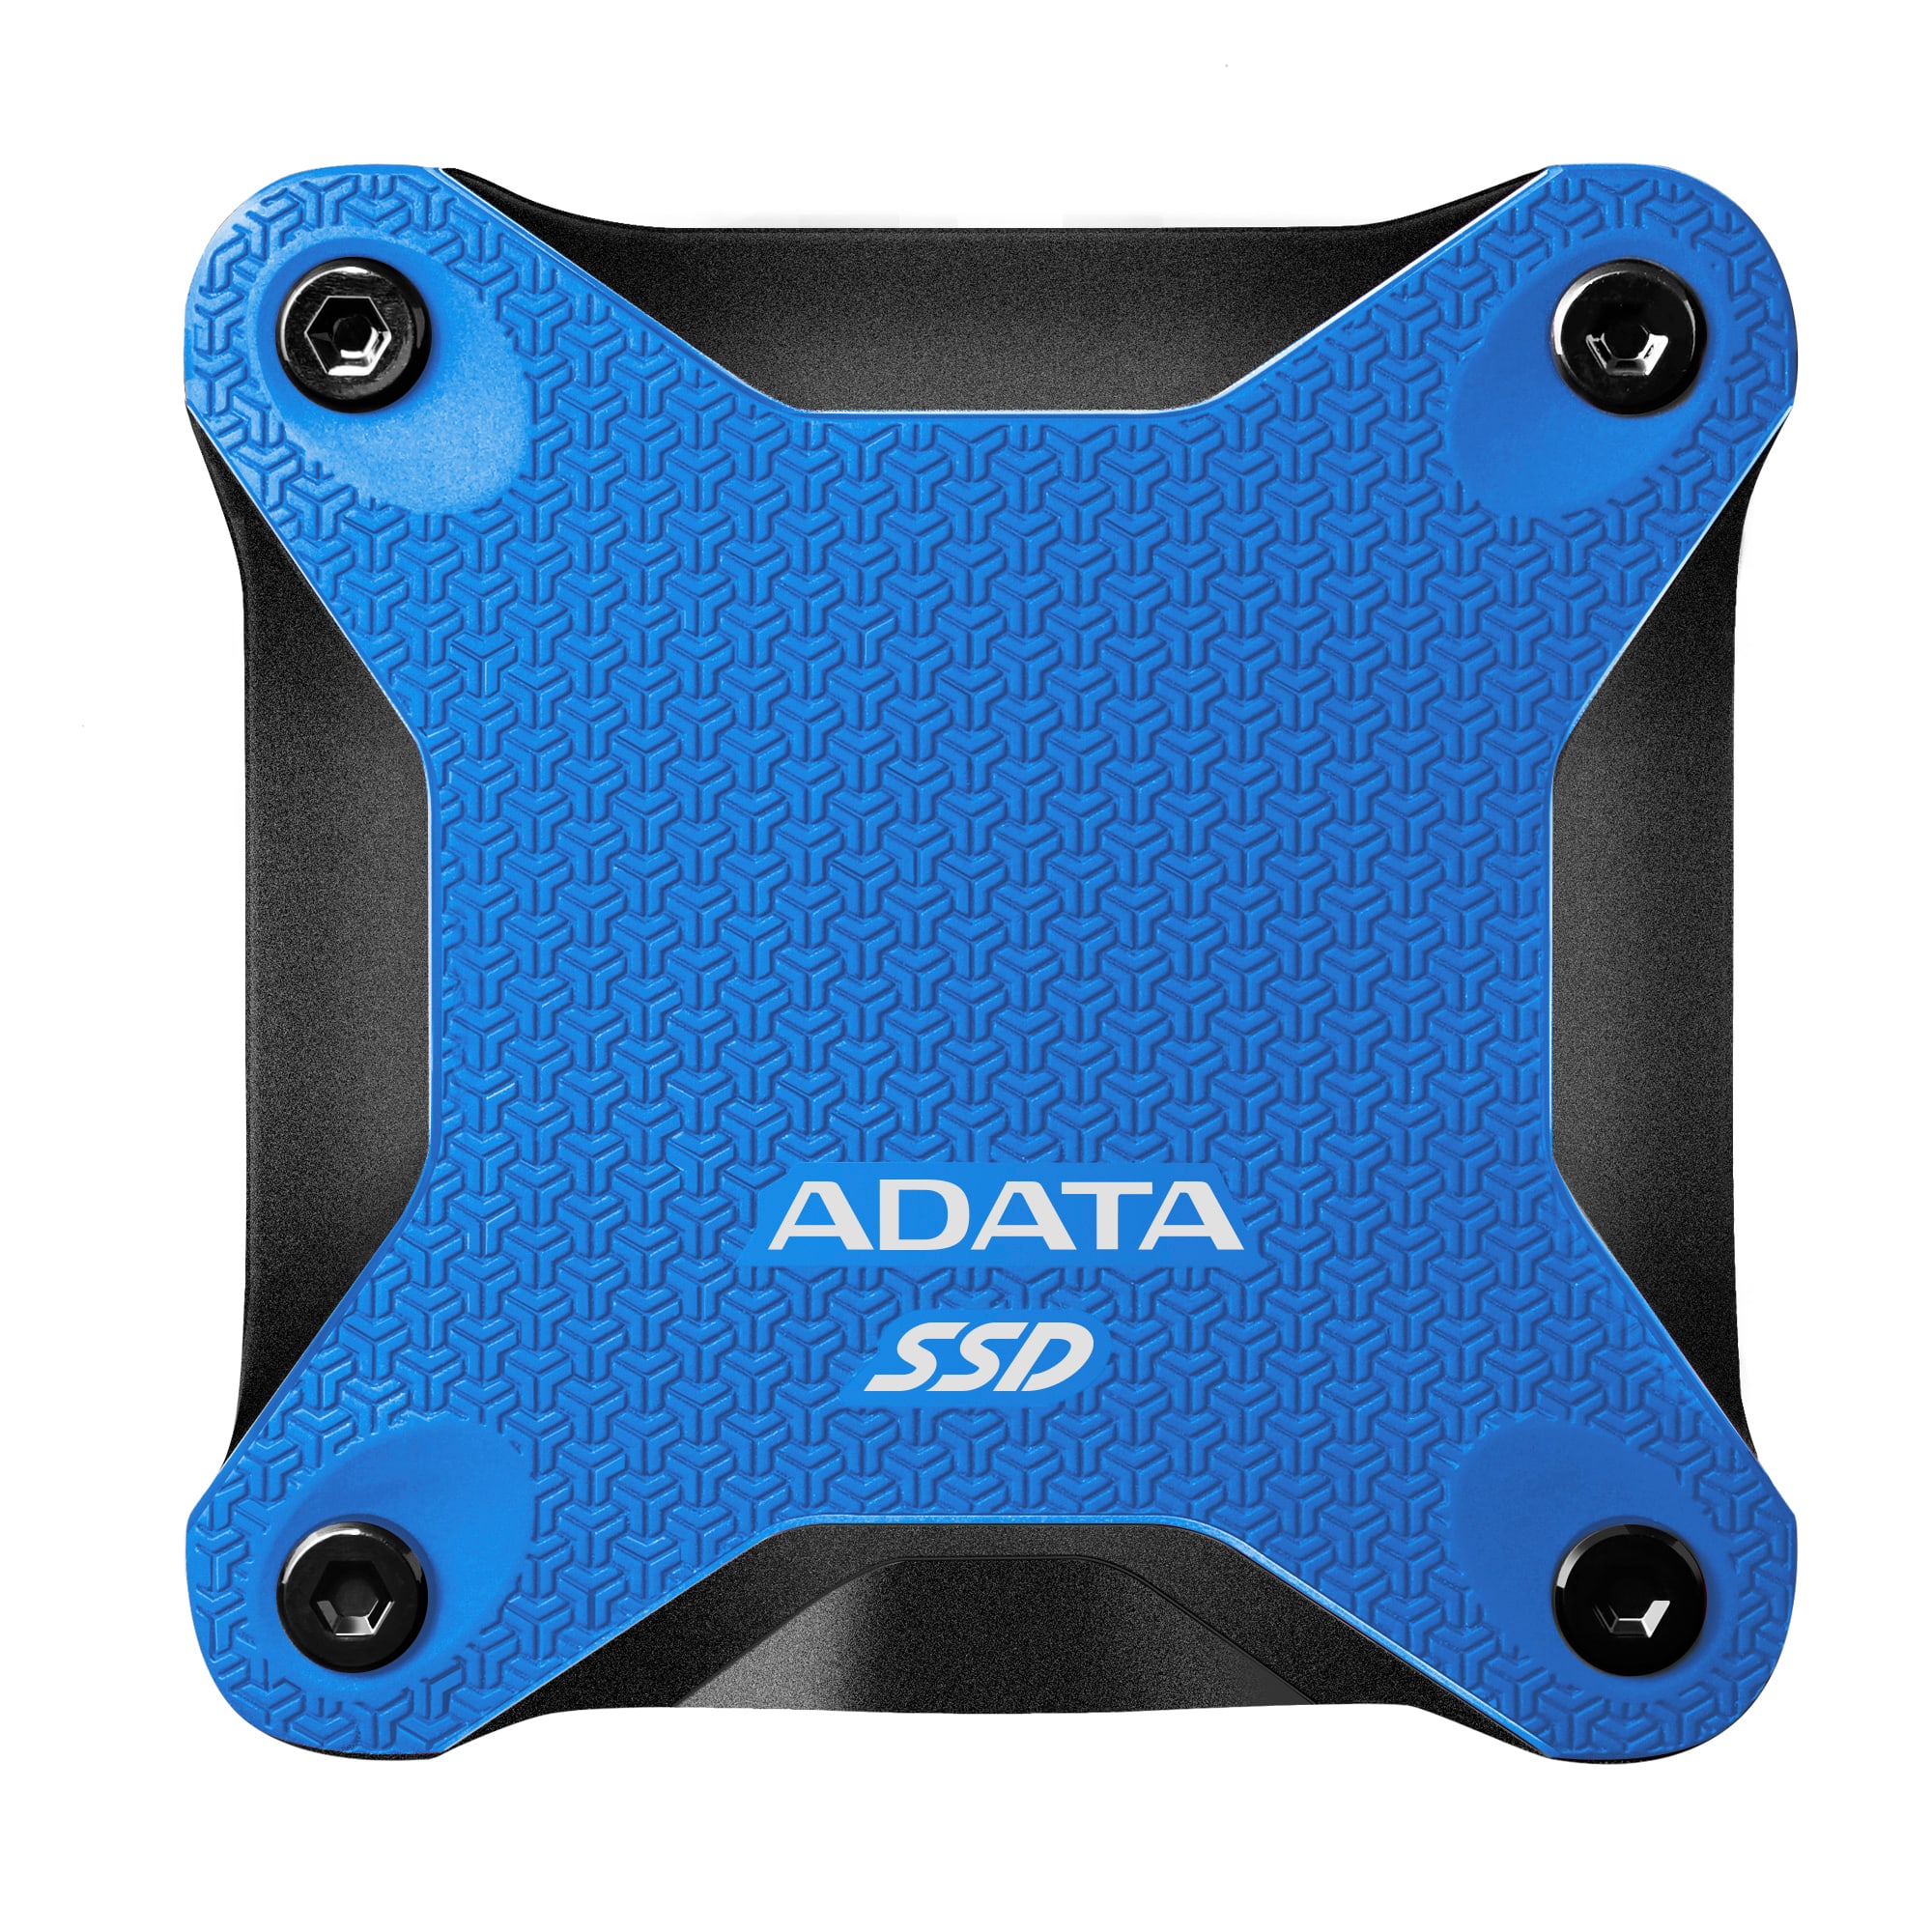 ADATA SSD SD600Q, 960GB, USB 3.2 - rýchlosť 440/430 MB/s (ASD600Q-960GU31-CBK) externý pevný disk, čierna